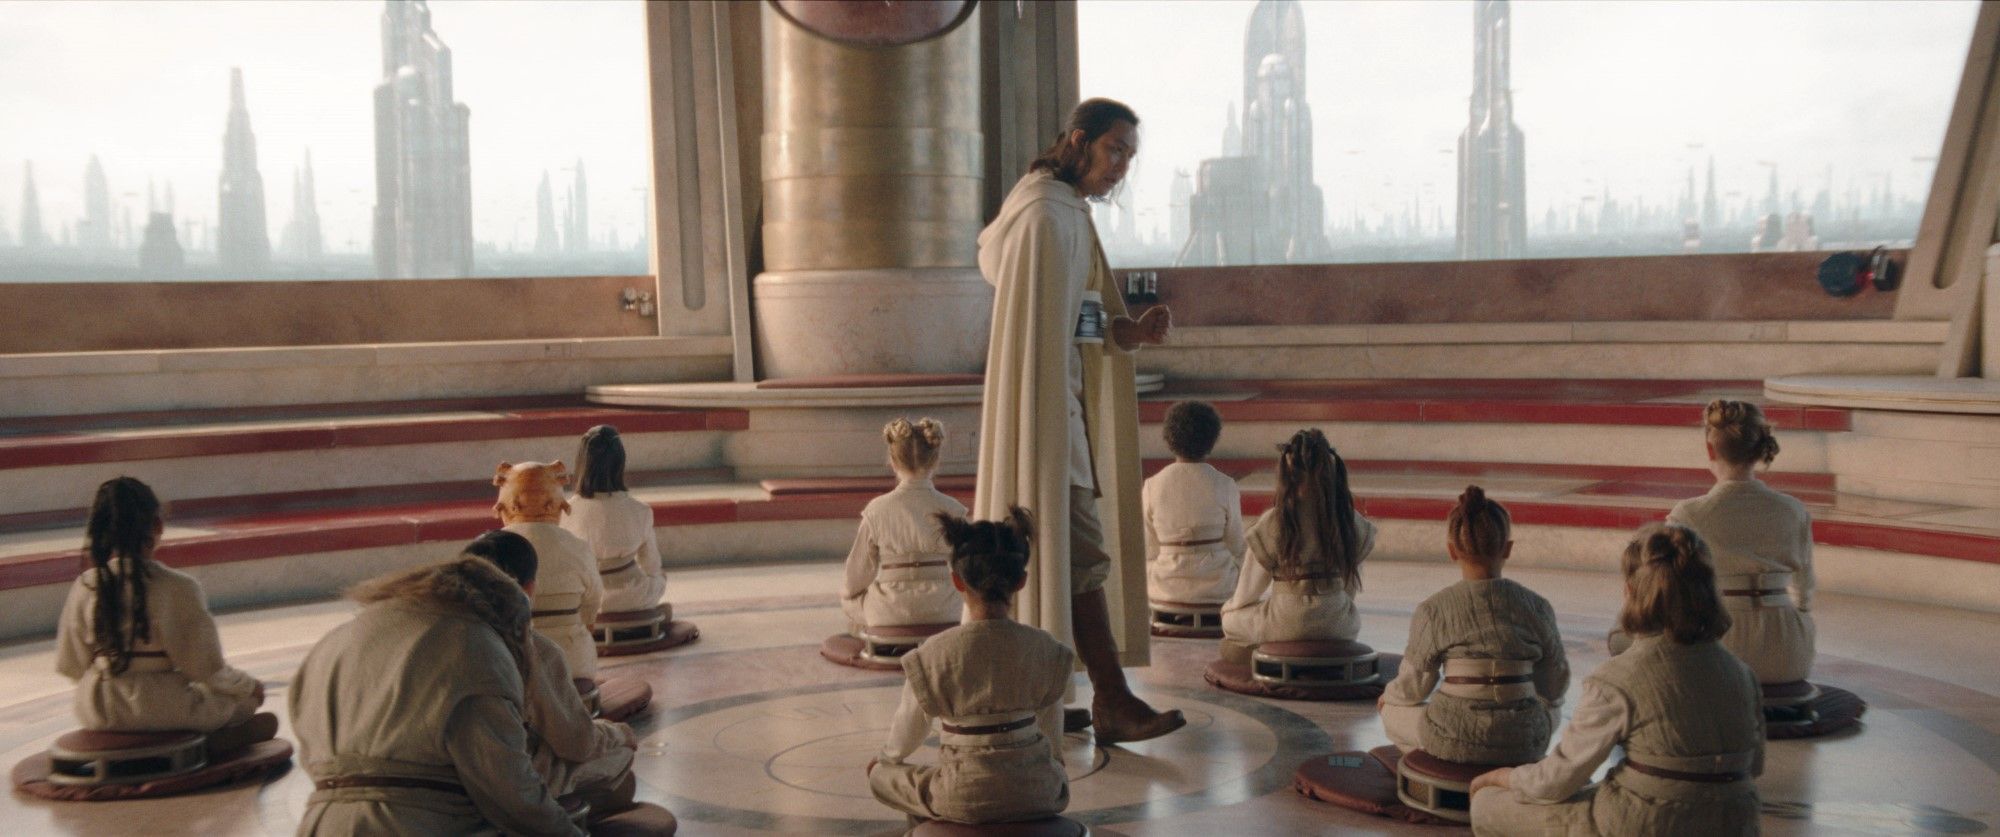 Mestre Jedi Sol (Lee Jung-jae) caminha entre um grupo de Jedi Padawans sentados no Templo de Coruscant em Star Wars: The Acolyte